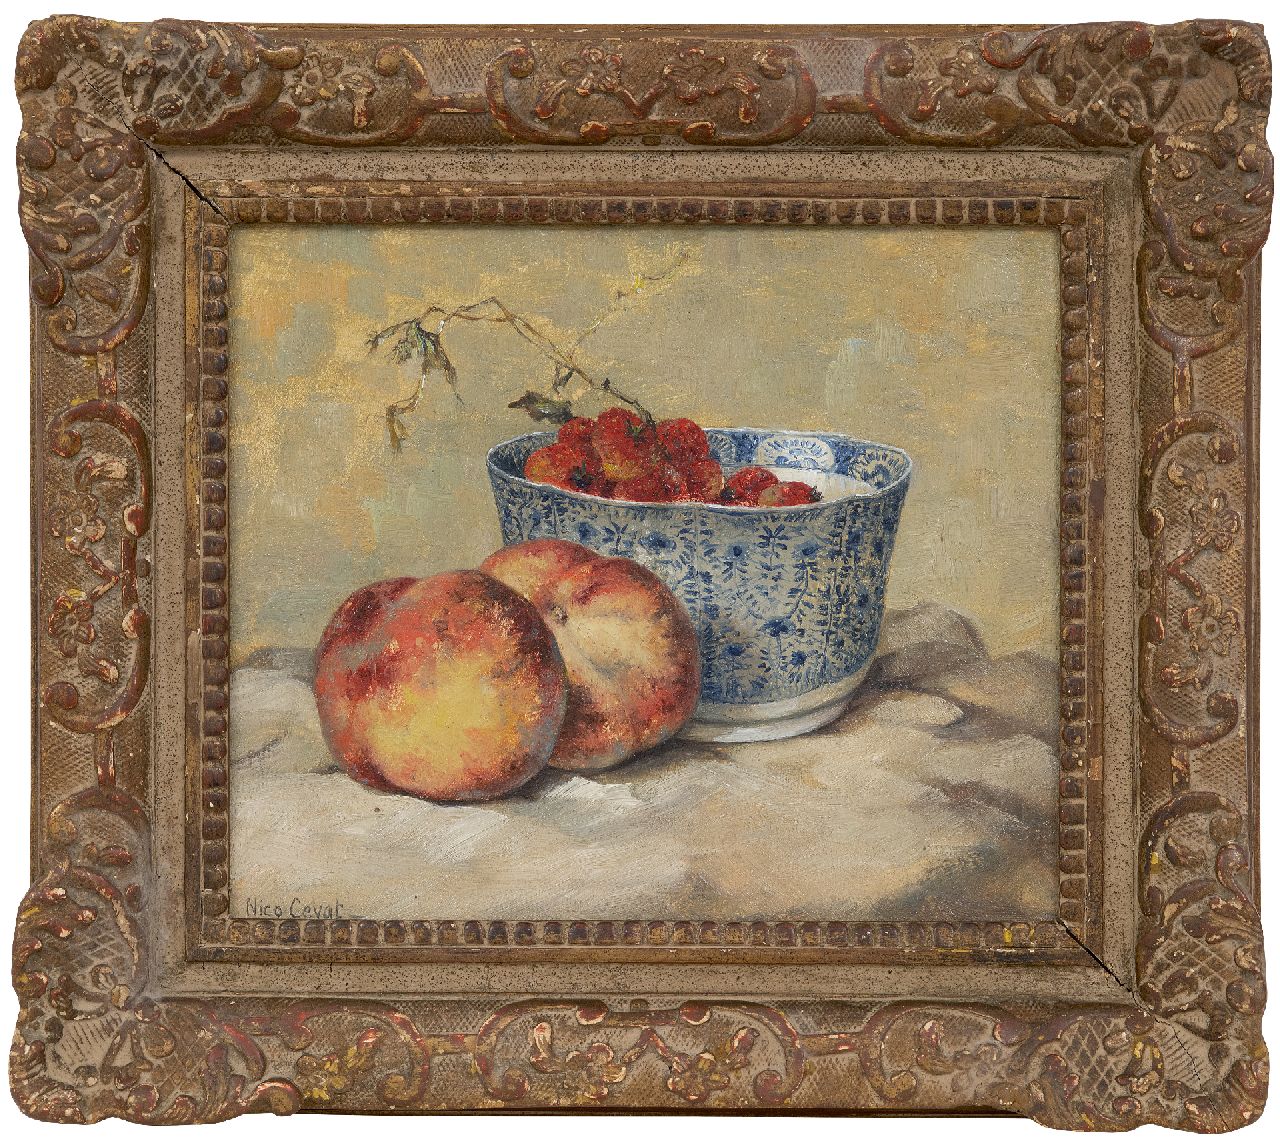 Cevat N.F.H.  | Nicolas Friedrich Heinrich 'Nico' Cevat | Schilderijen te koop aangeboden | Stilleven met perziken en aardbeien, olieverf op paneel 23,4 x 28,0 cm, gesigneerd linksonder